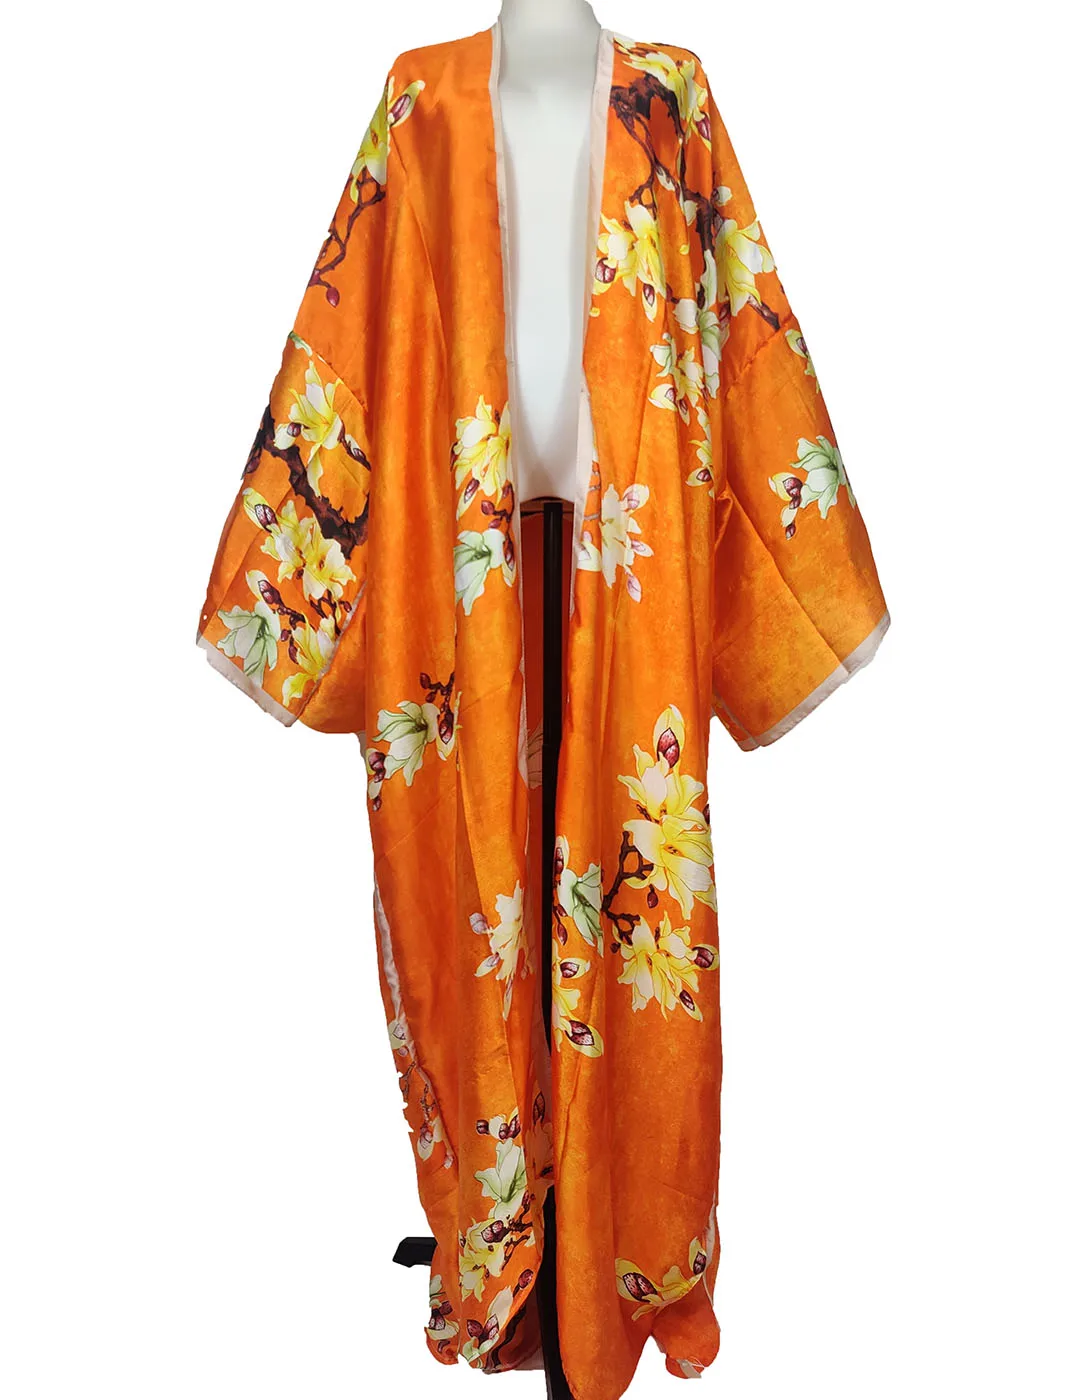 African Dresses For Women New Elegant 2022 Summer Silk Floral Full Length Bohemian Kimonos loose Beach Bikini Cover Up For Women